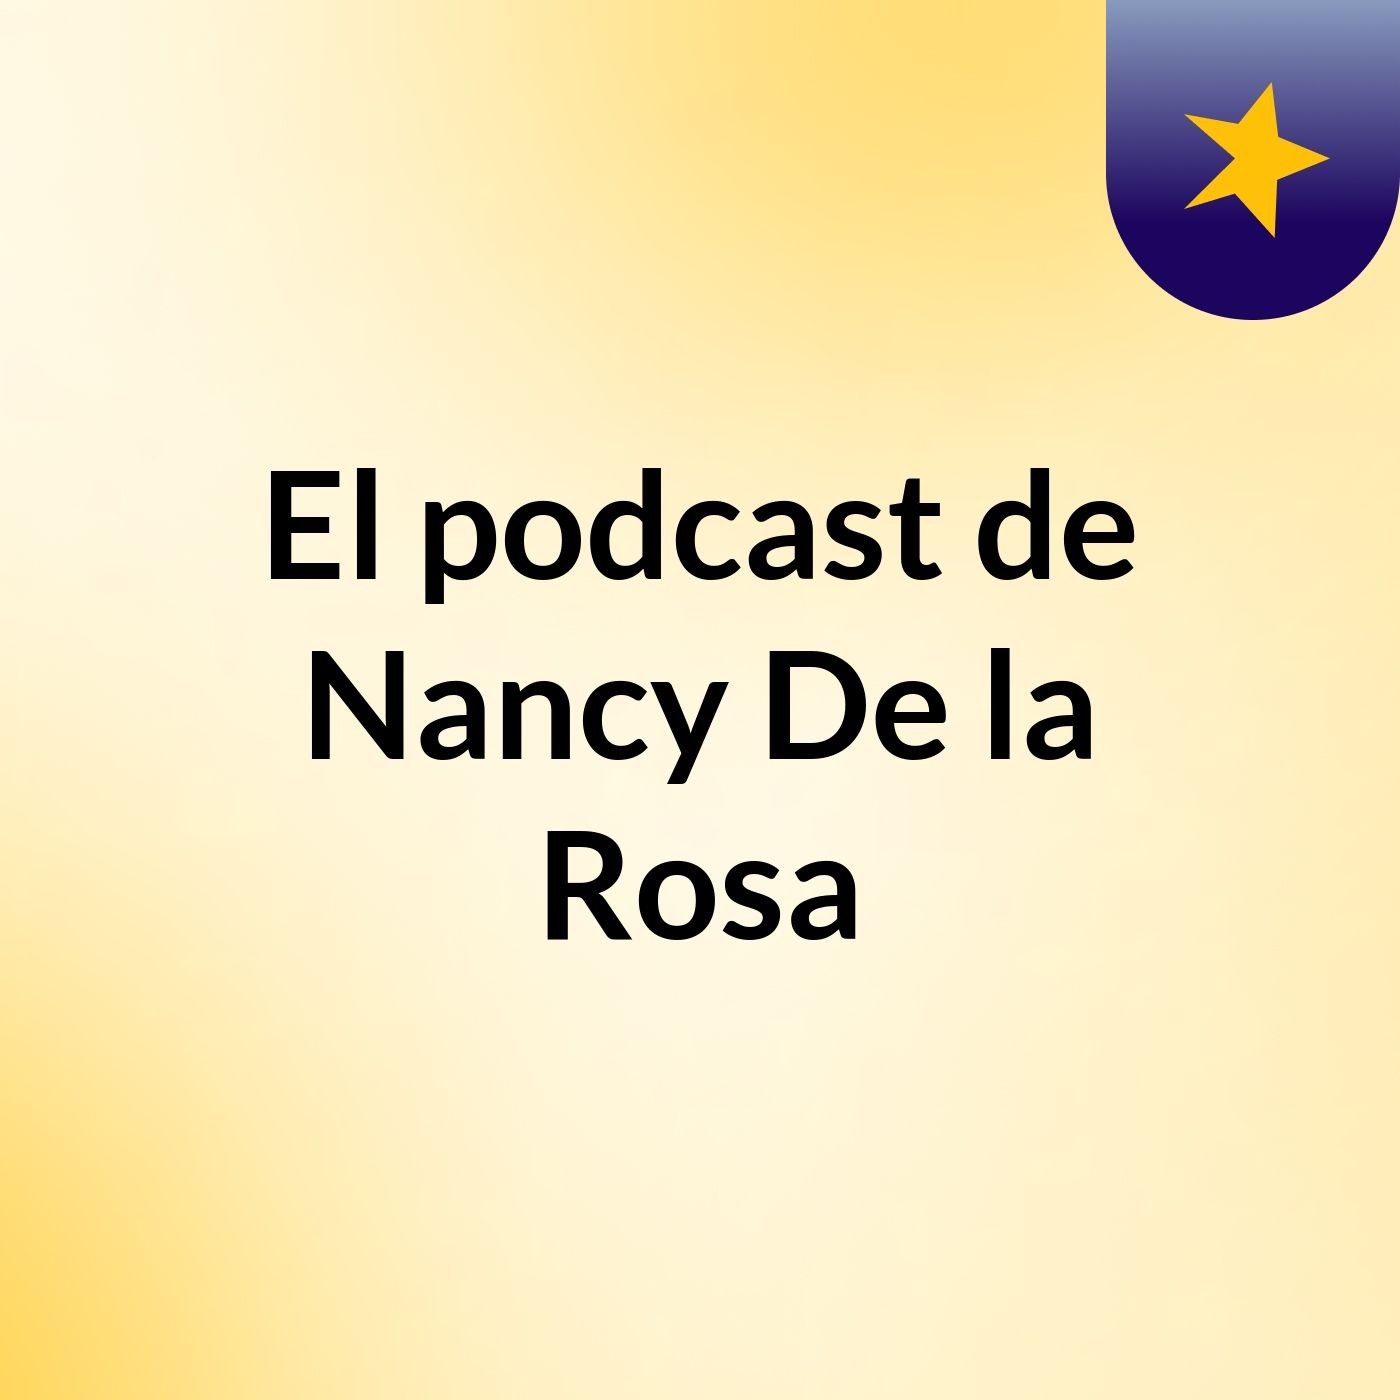 El podcast de Nancy De la Rosa